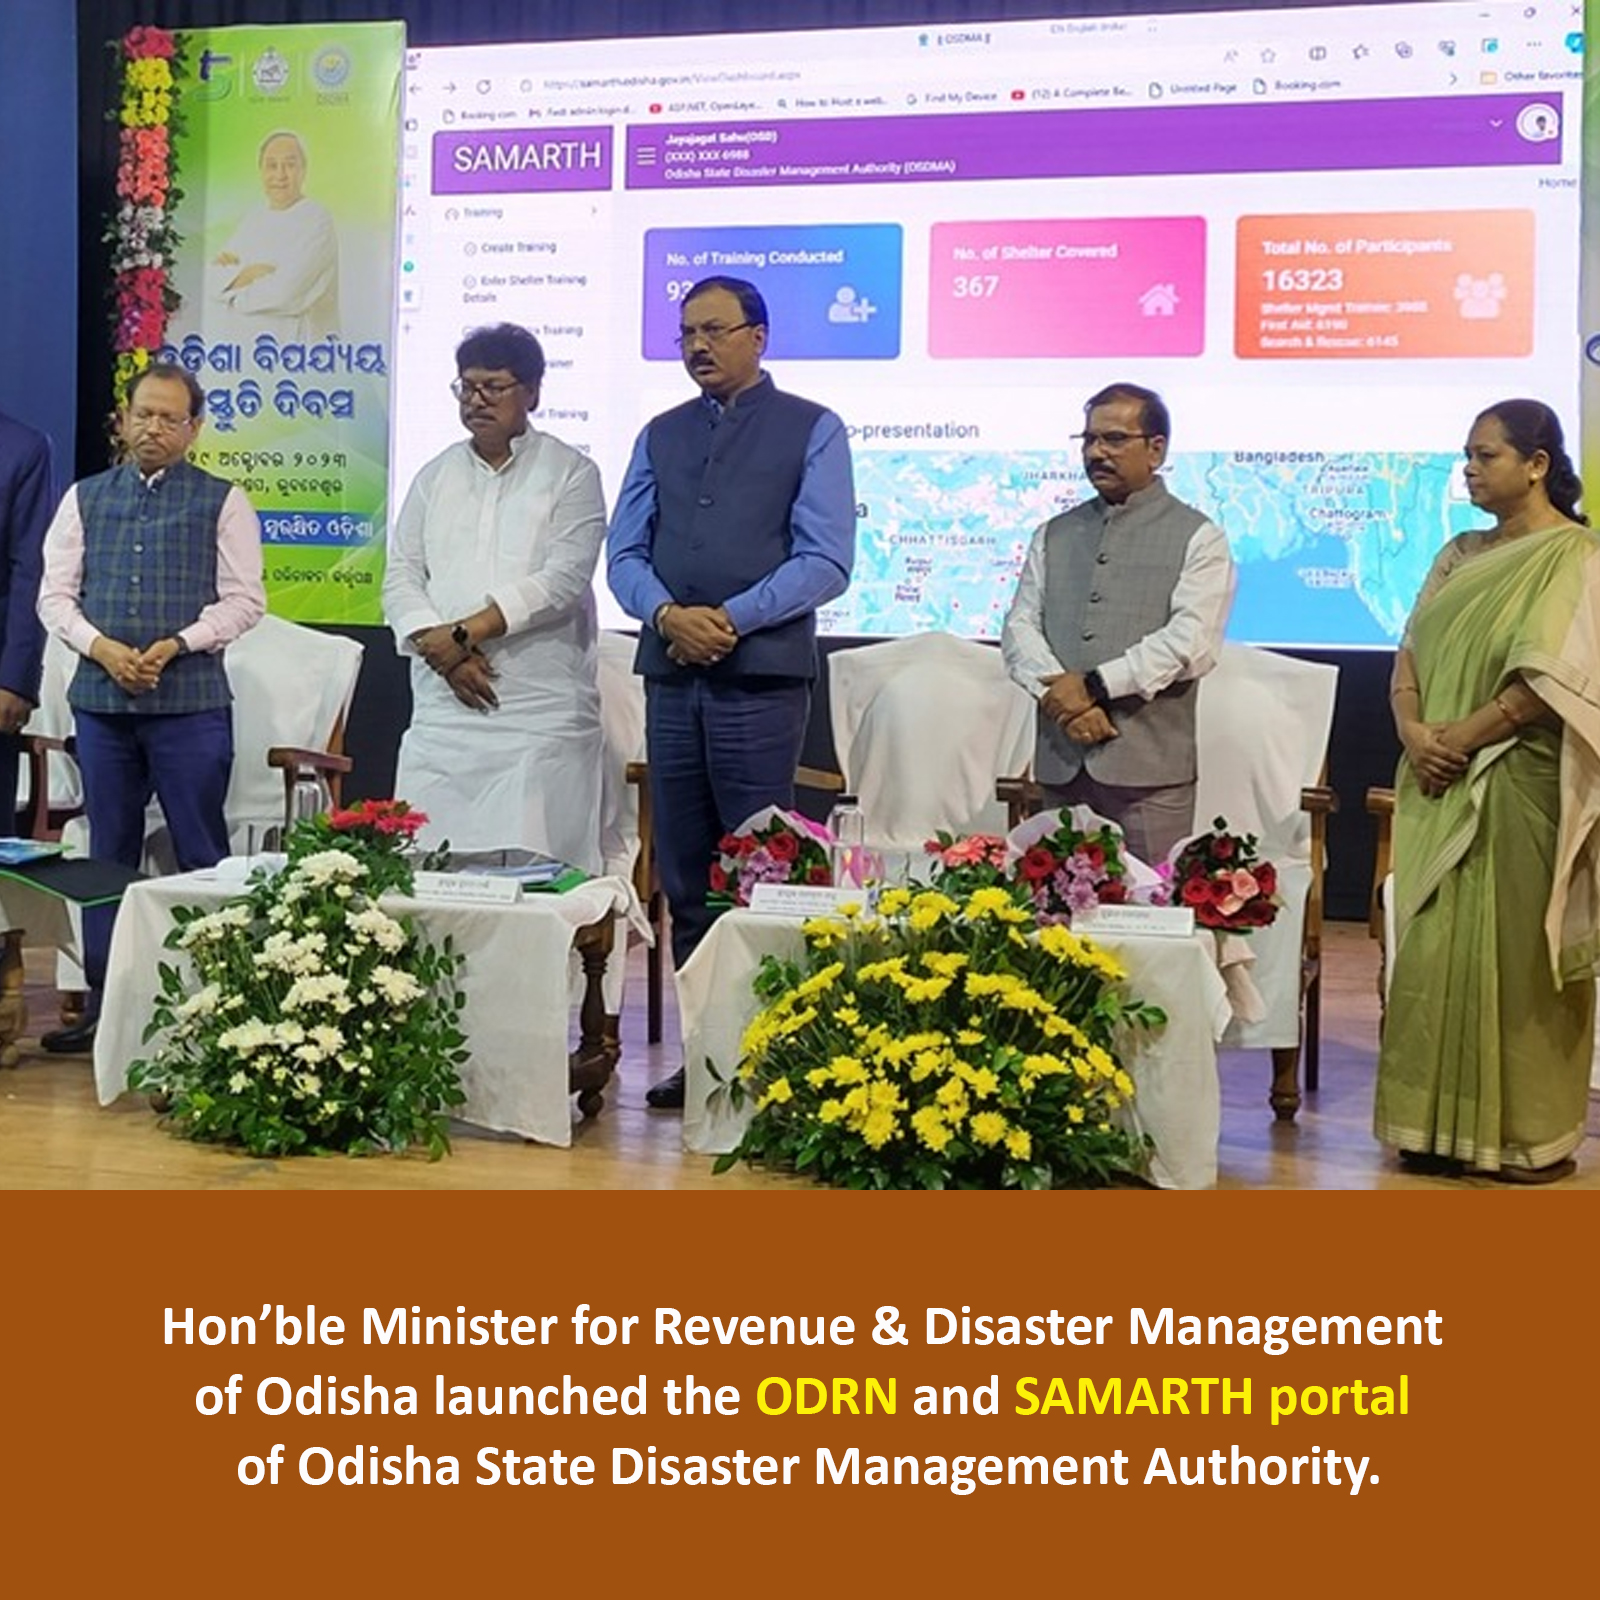 Image of ओडिशा राज्य आपदा प्रबंधन प्राधिकरण के ओडीआरएन और समर्थ पोर्टल का शुभारंभ।